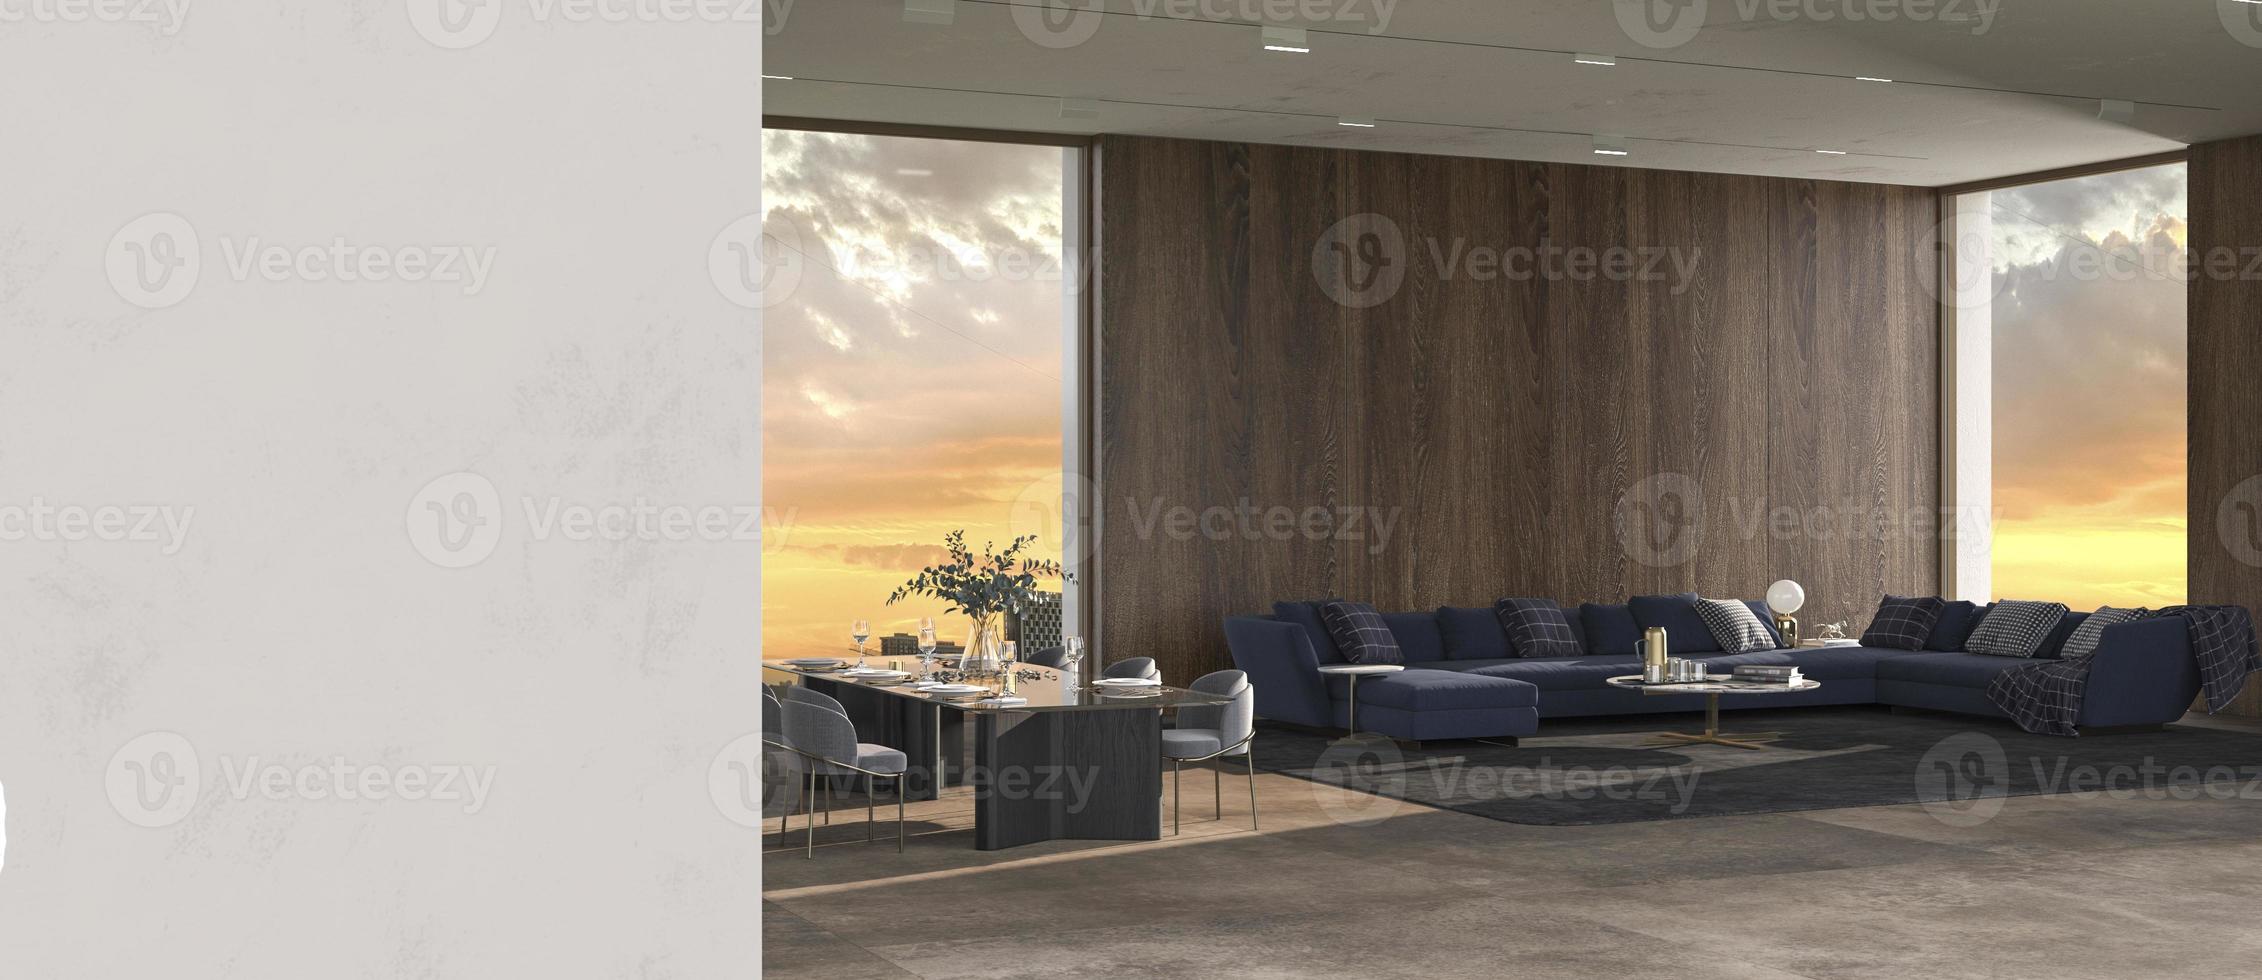 moderne luxe interieur achtergrond met panoramische ramen en uitzicht op de natuur en gips muur mock up helder ontwerp woonkamer 3d render illustratie foto